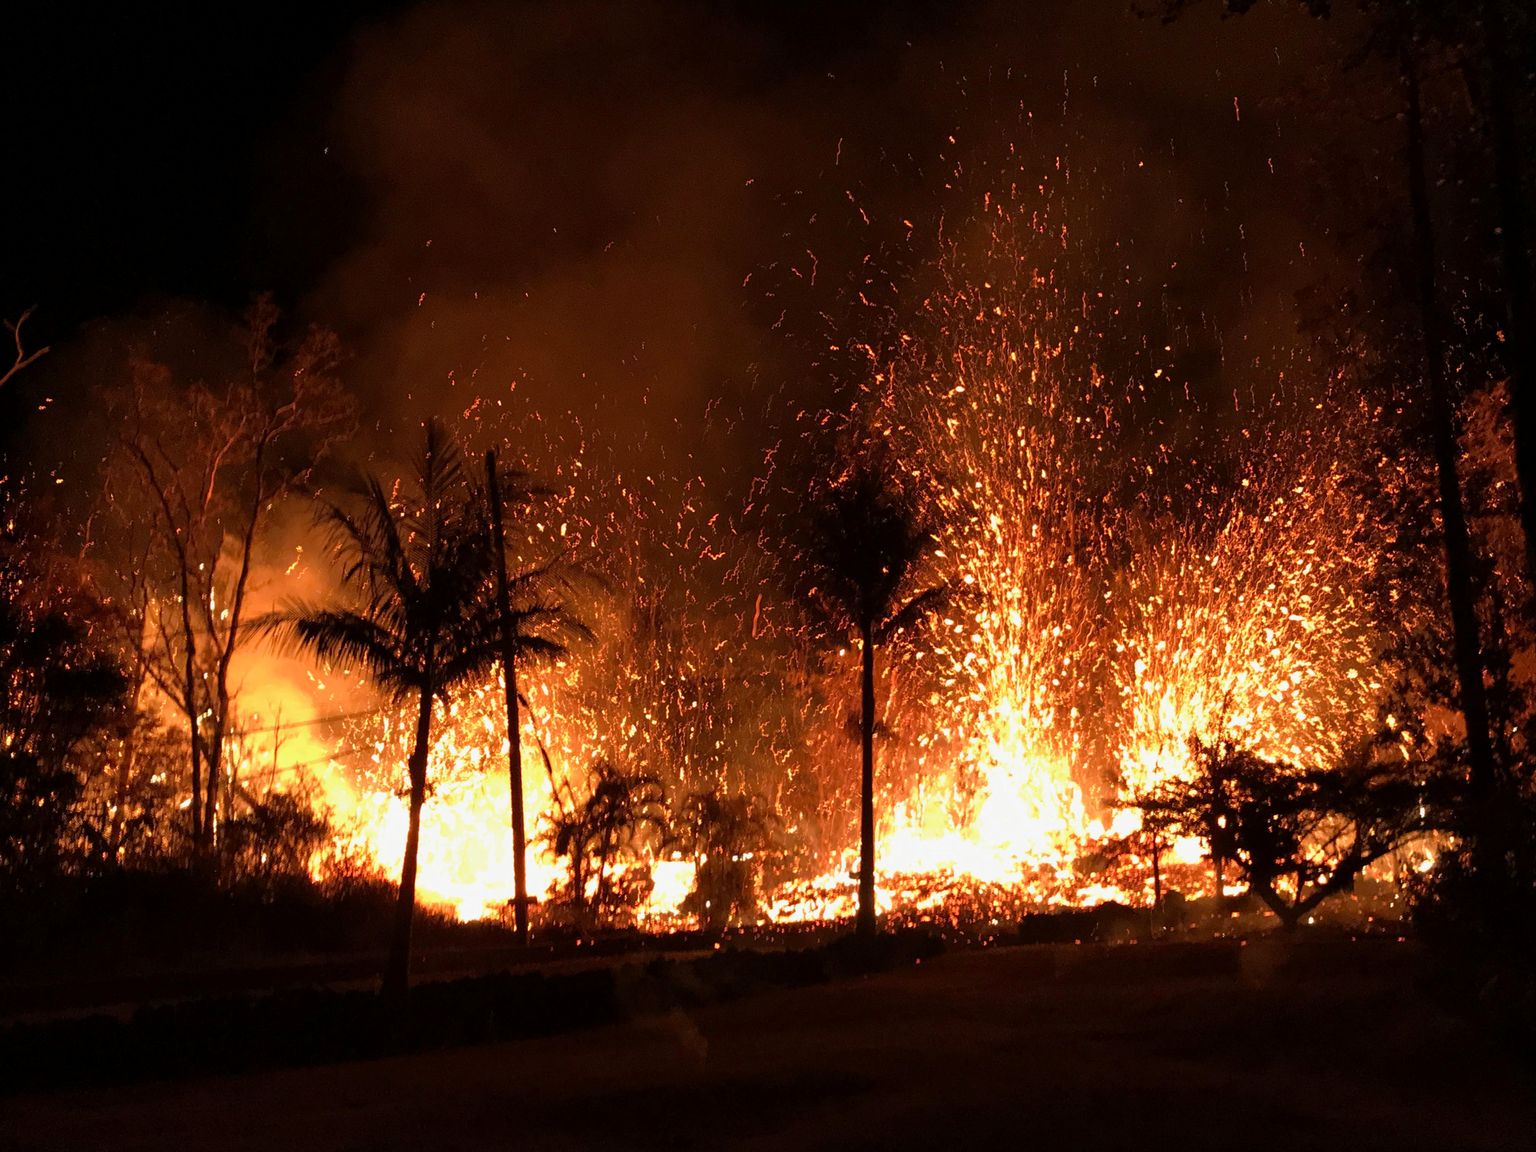 Hawaii loodus taastub vulkaanipursetest kärmelt, kuid inimeste elupaikade taastamine nõuab pikka ja rasket tööd